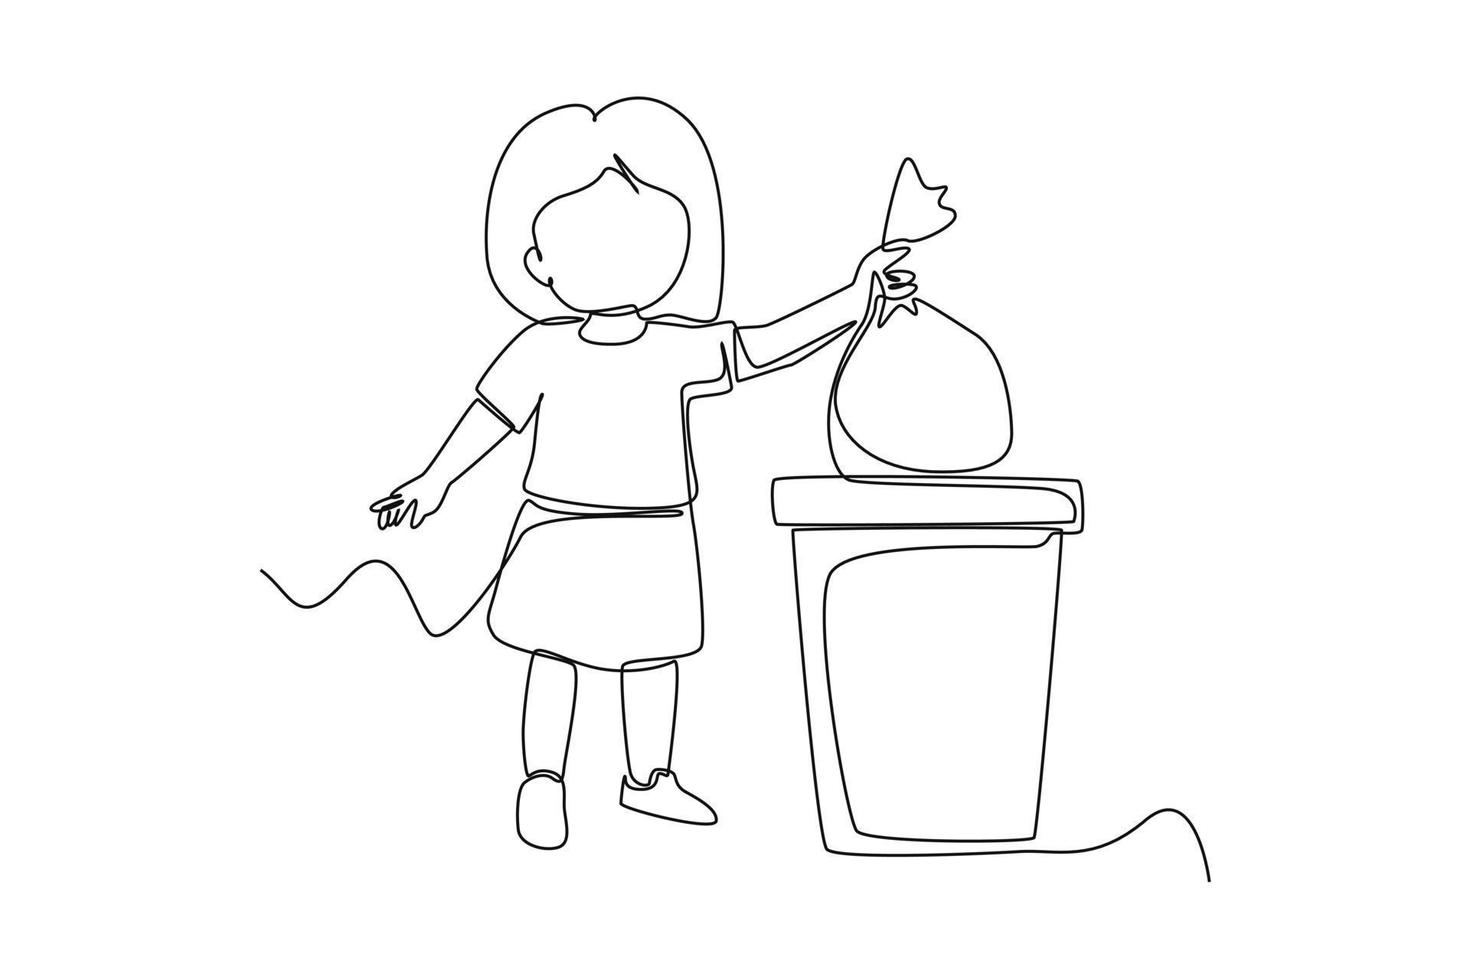 Célibataire un ligne dessin peu enfant jeter poubelle à poubelle poubelle. soins de santé à école concept. continu ligne dessiner conception graphique vecteur illustration.